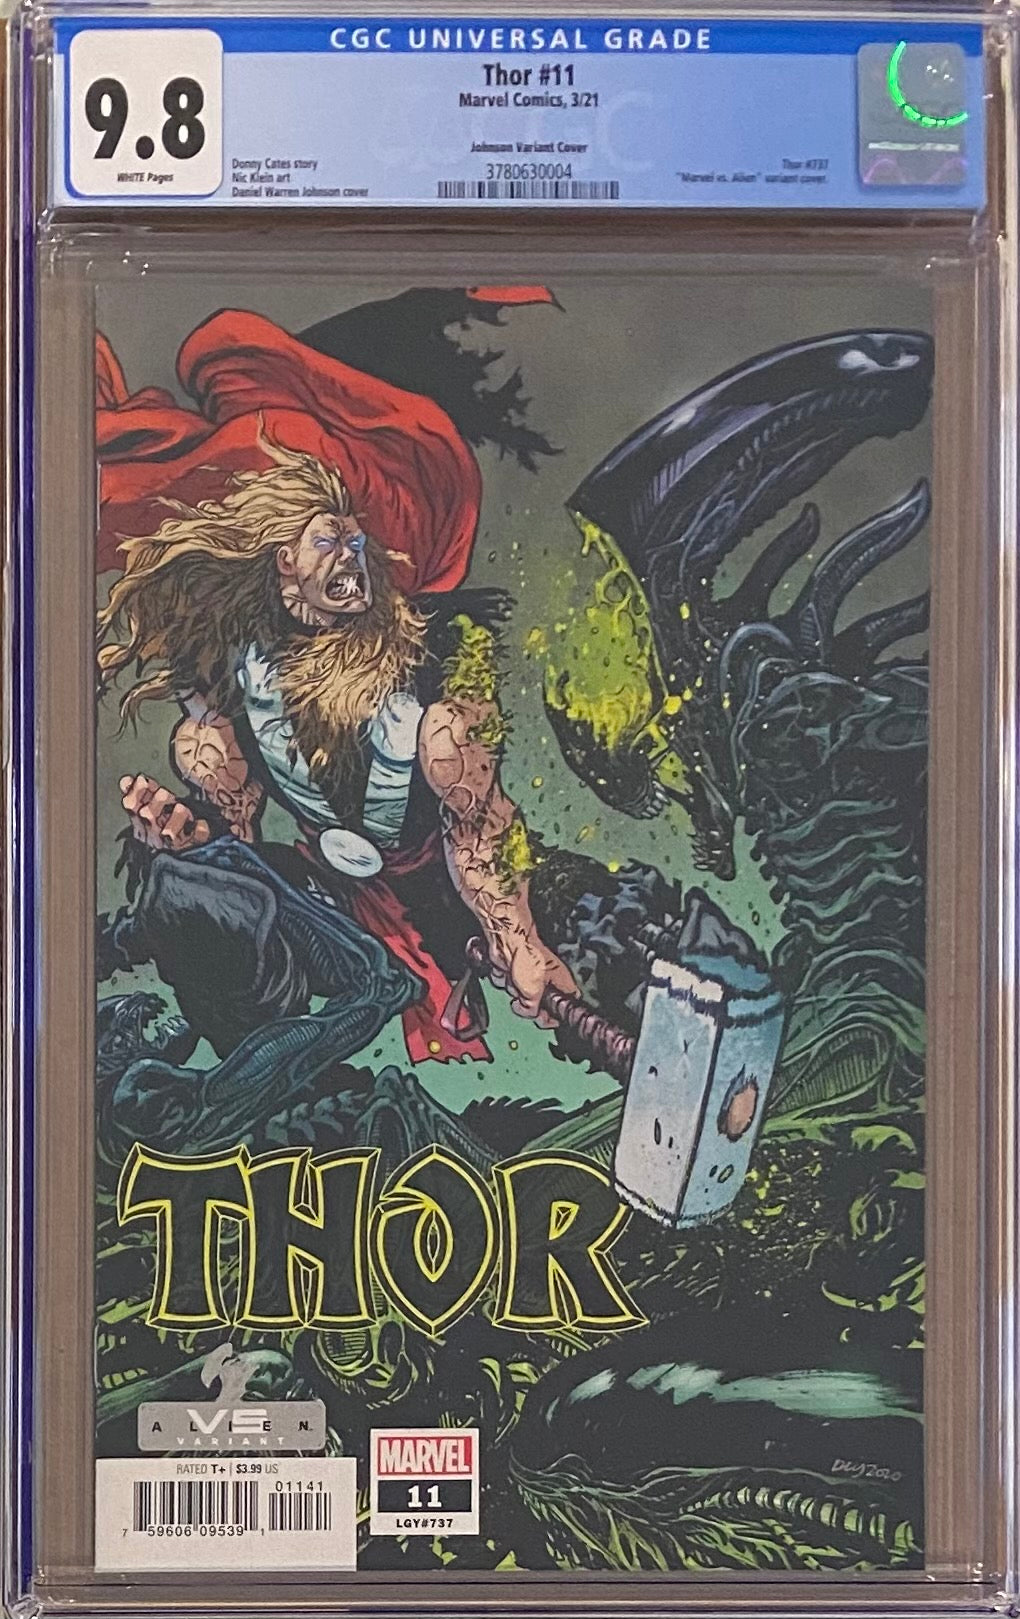 Thor #11 Johnson "Marvel vs. Aliens" Variant CGC 9.8